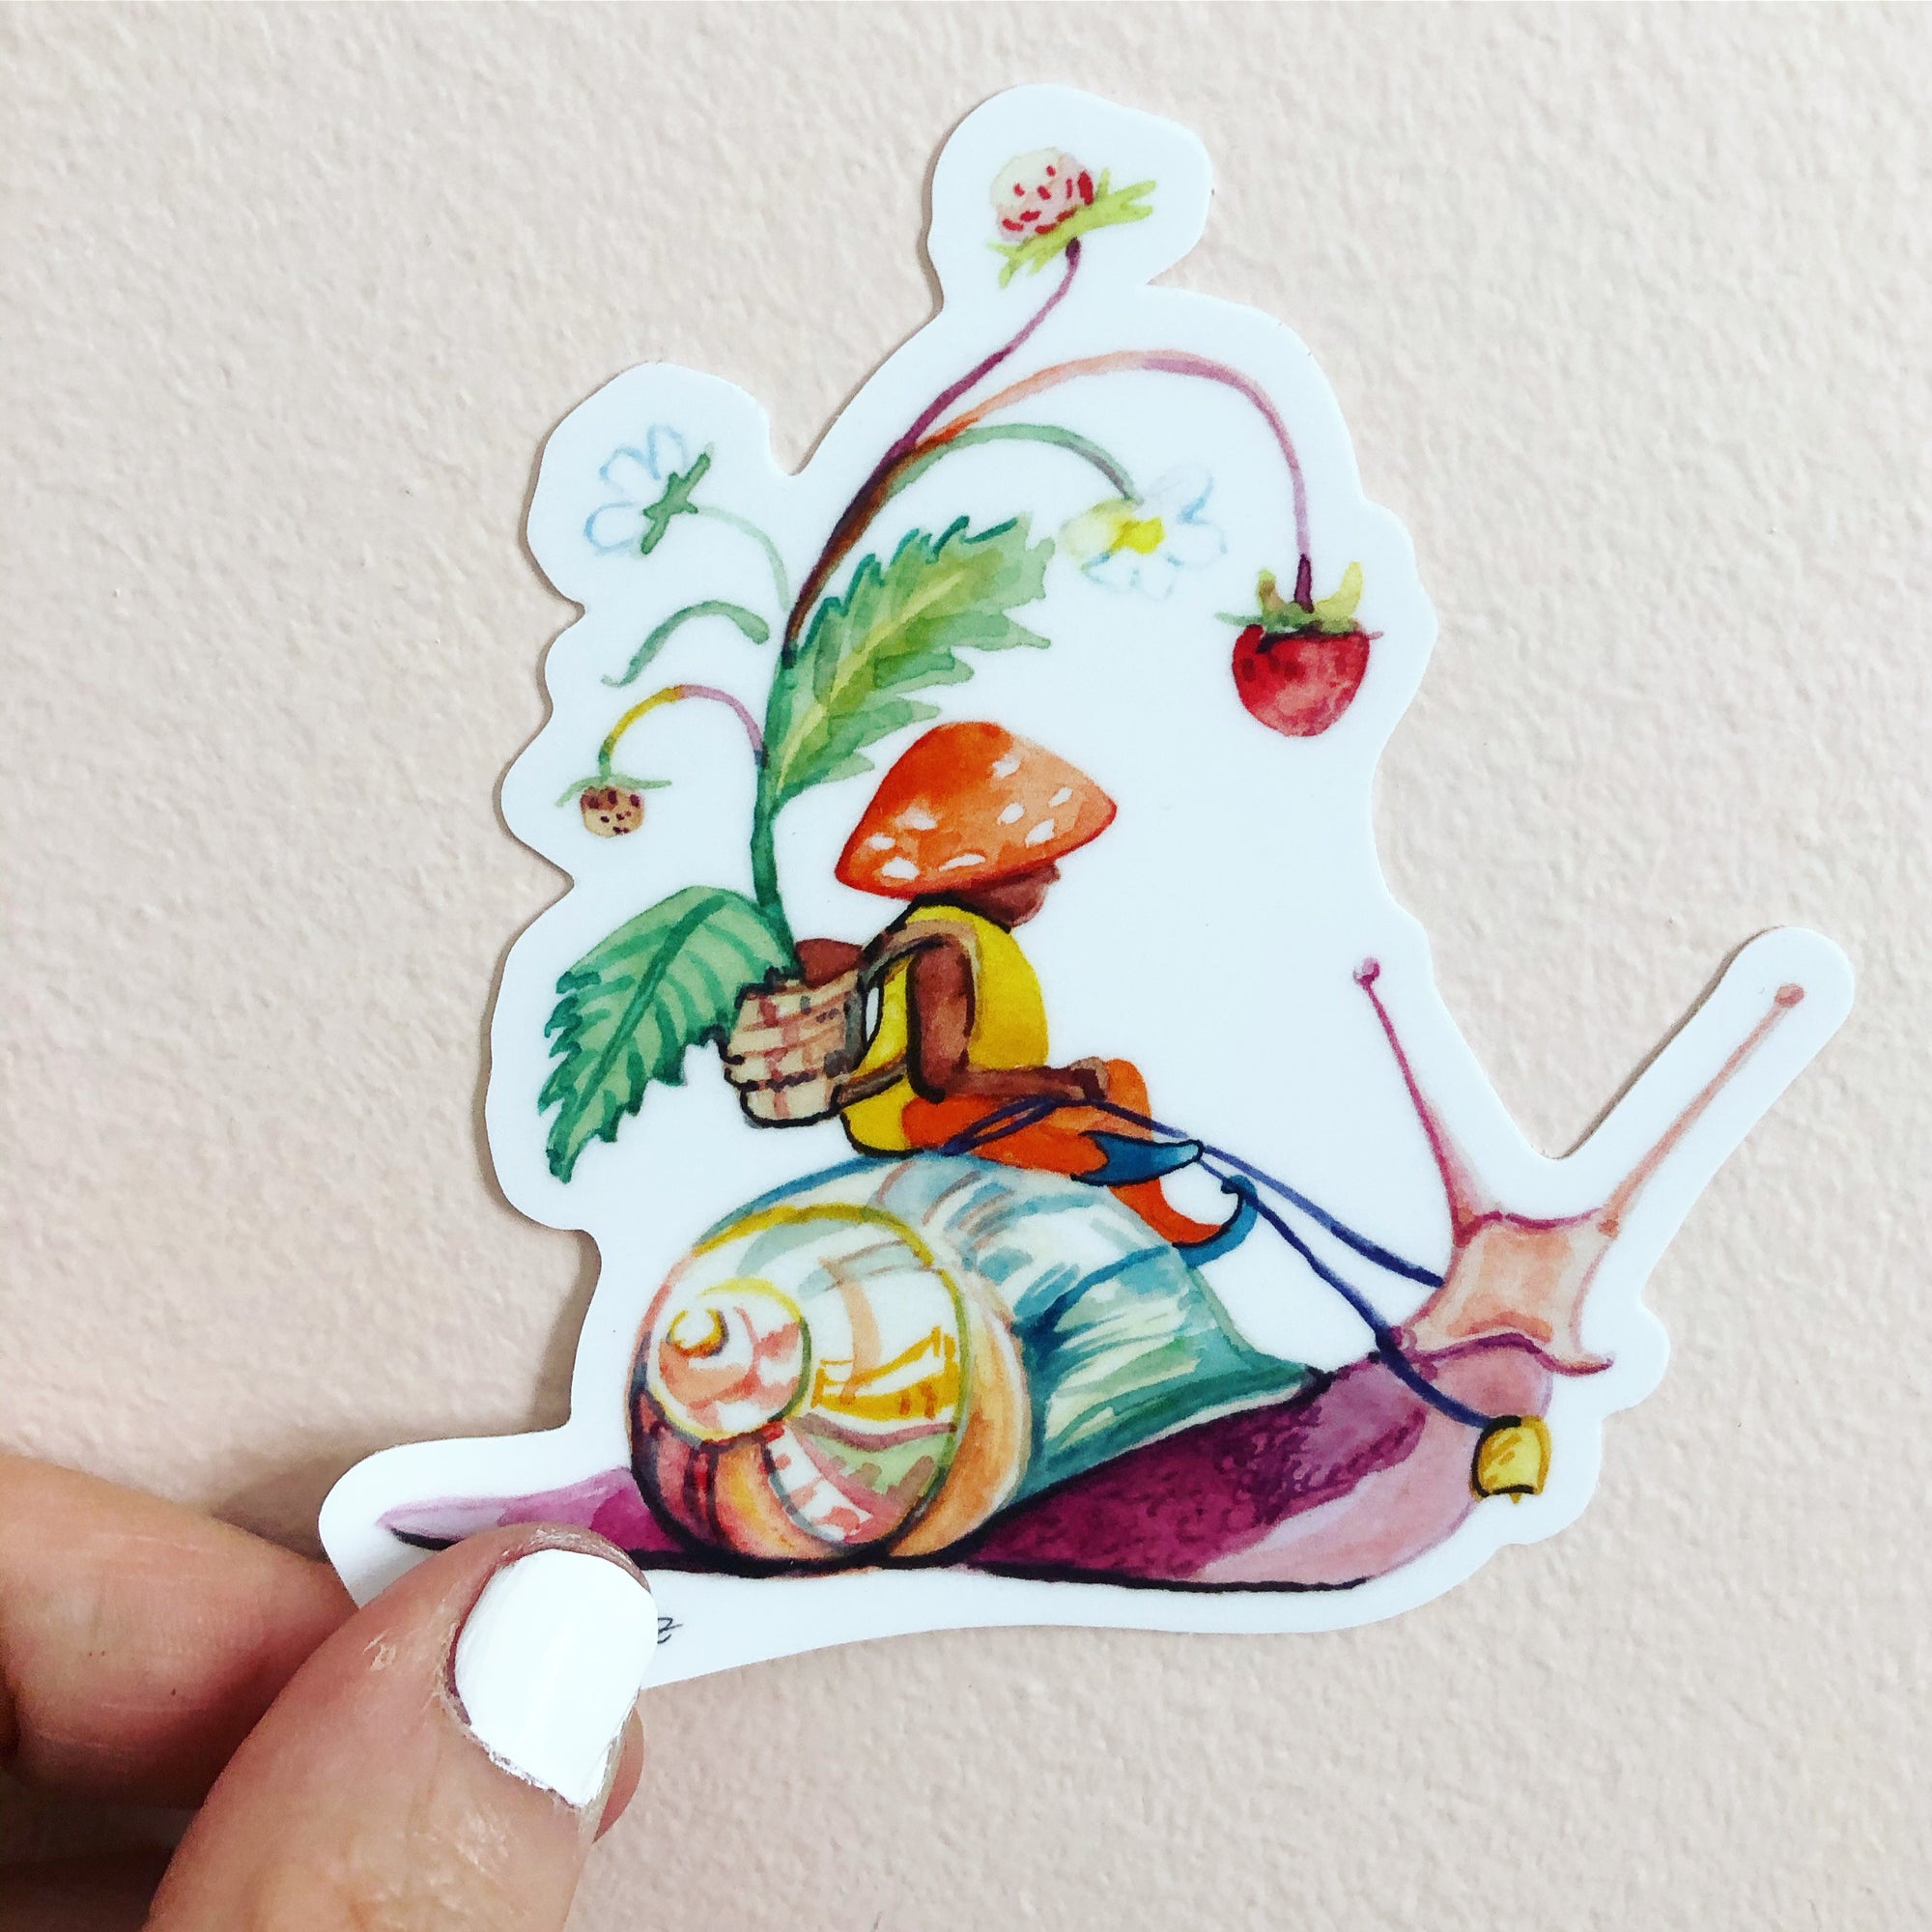 snail gnome sticker, woodland sticker, by Abigail Gray Swartz